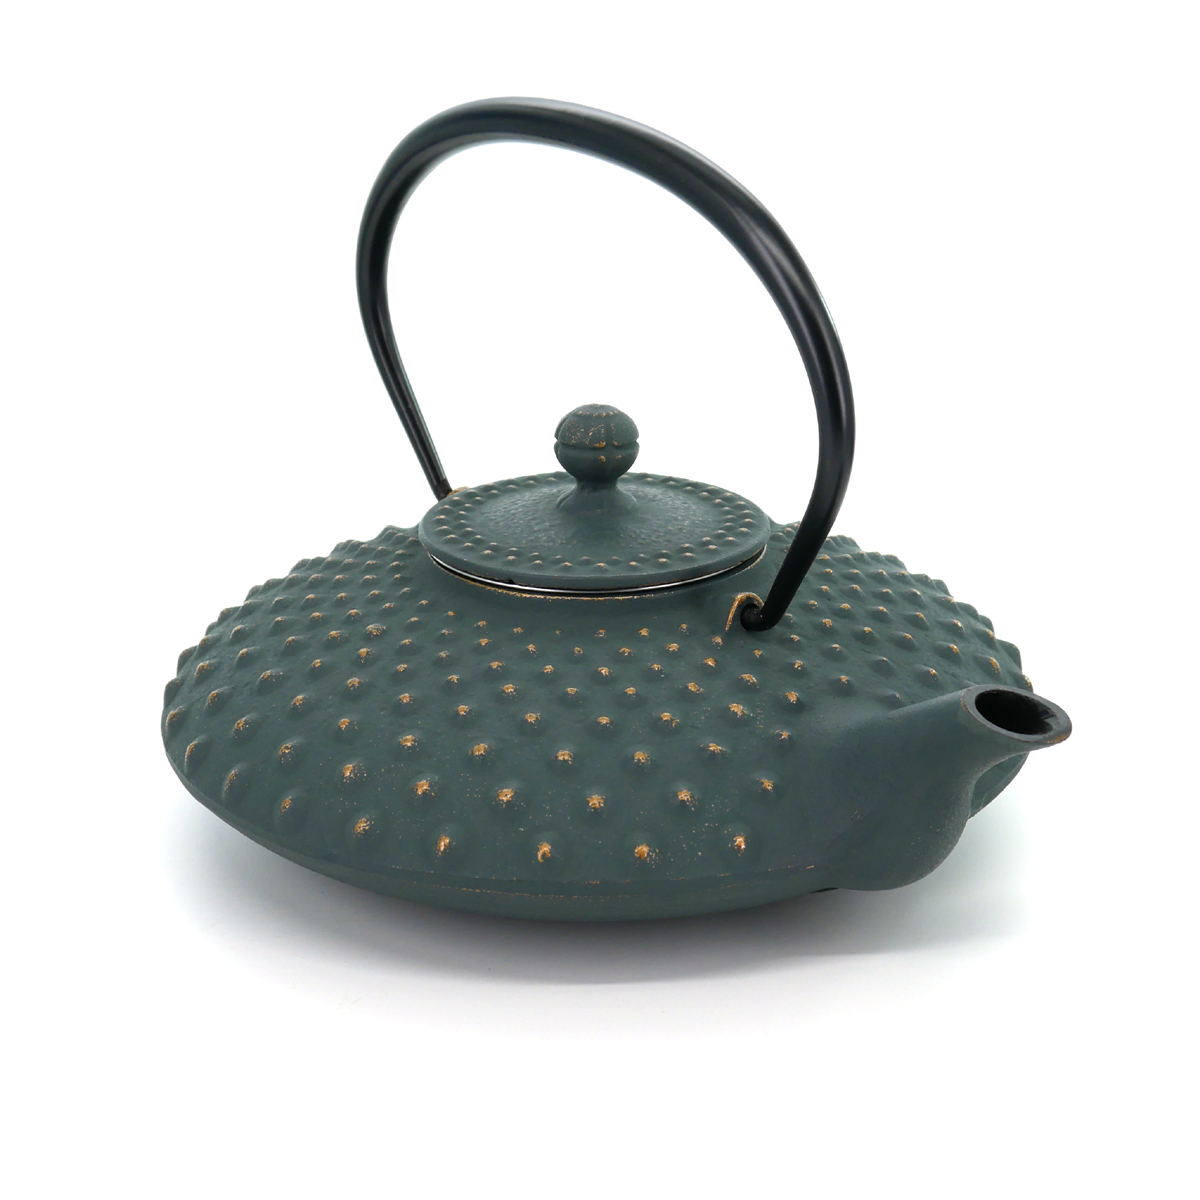 https://kyotoboutique.fr/18338/japanese-teapot-cast-iron-iwachu-kambin-0750lt-bronze.jpg